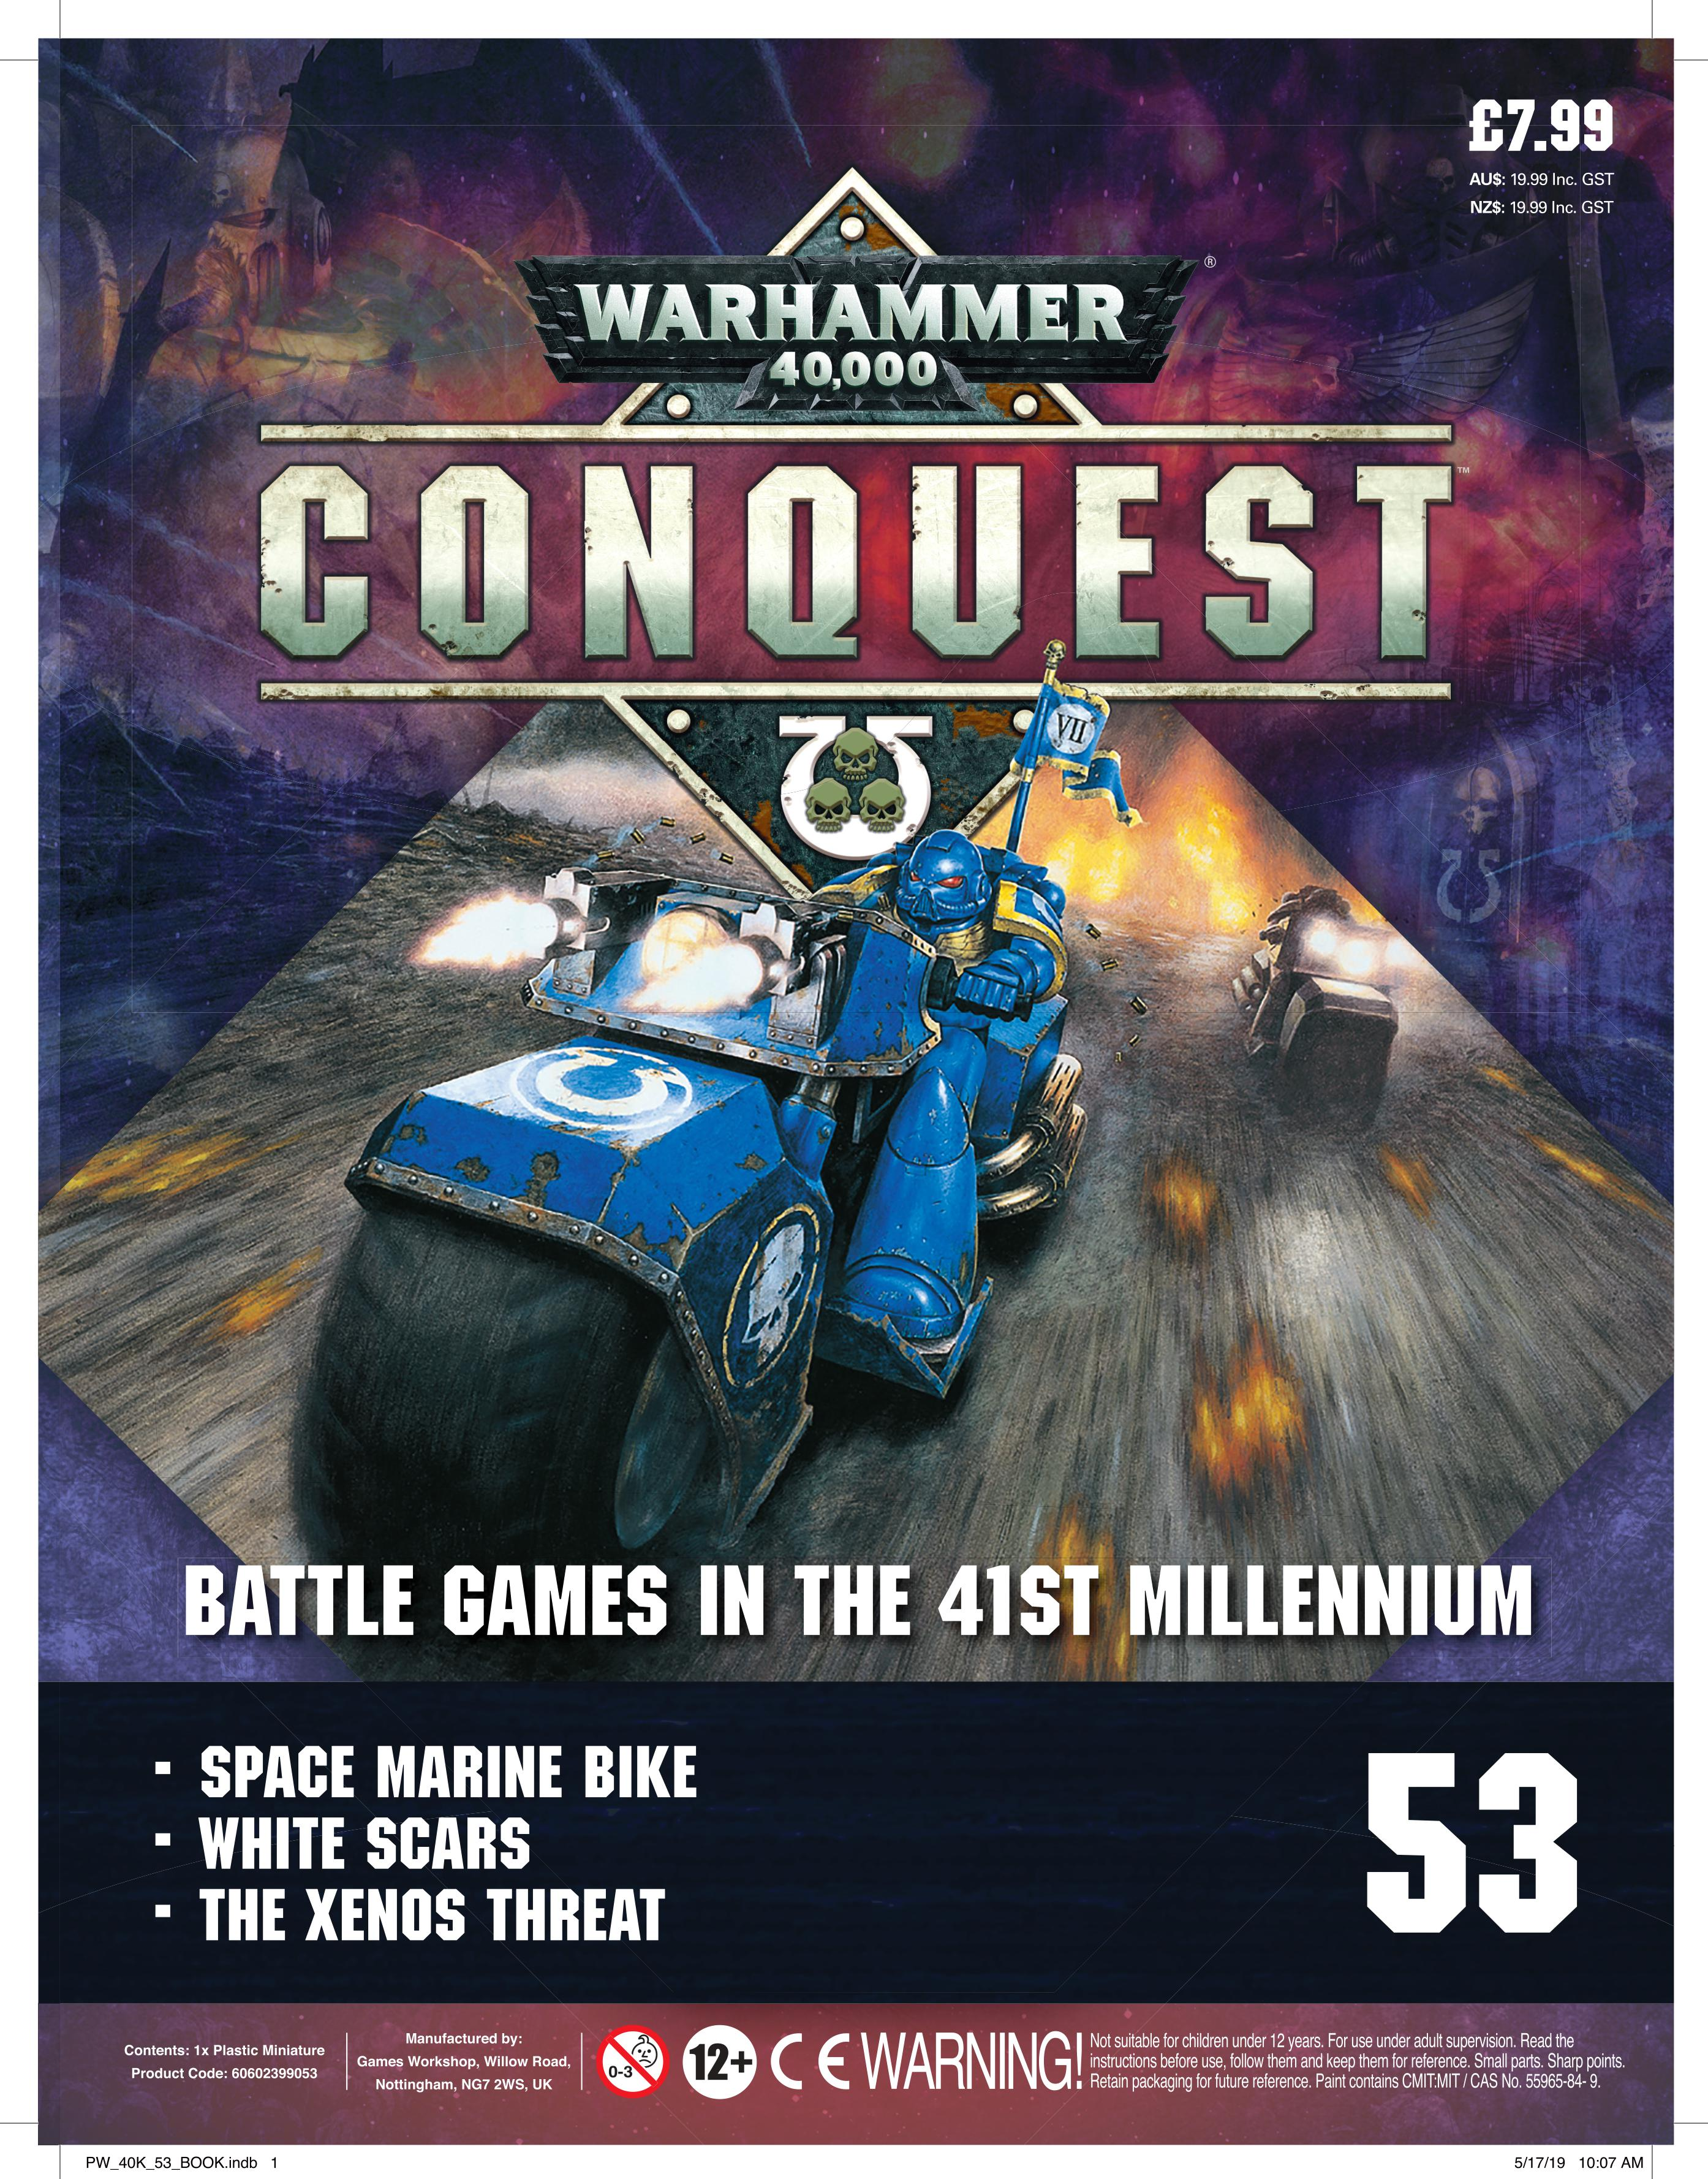 Warhammer Conquest #53 - Waterfront News